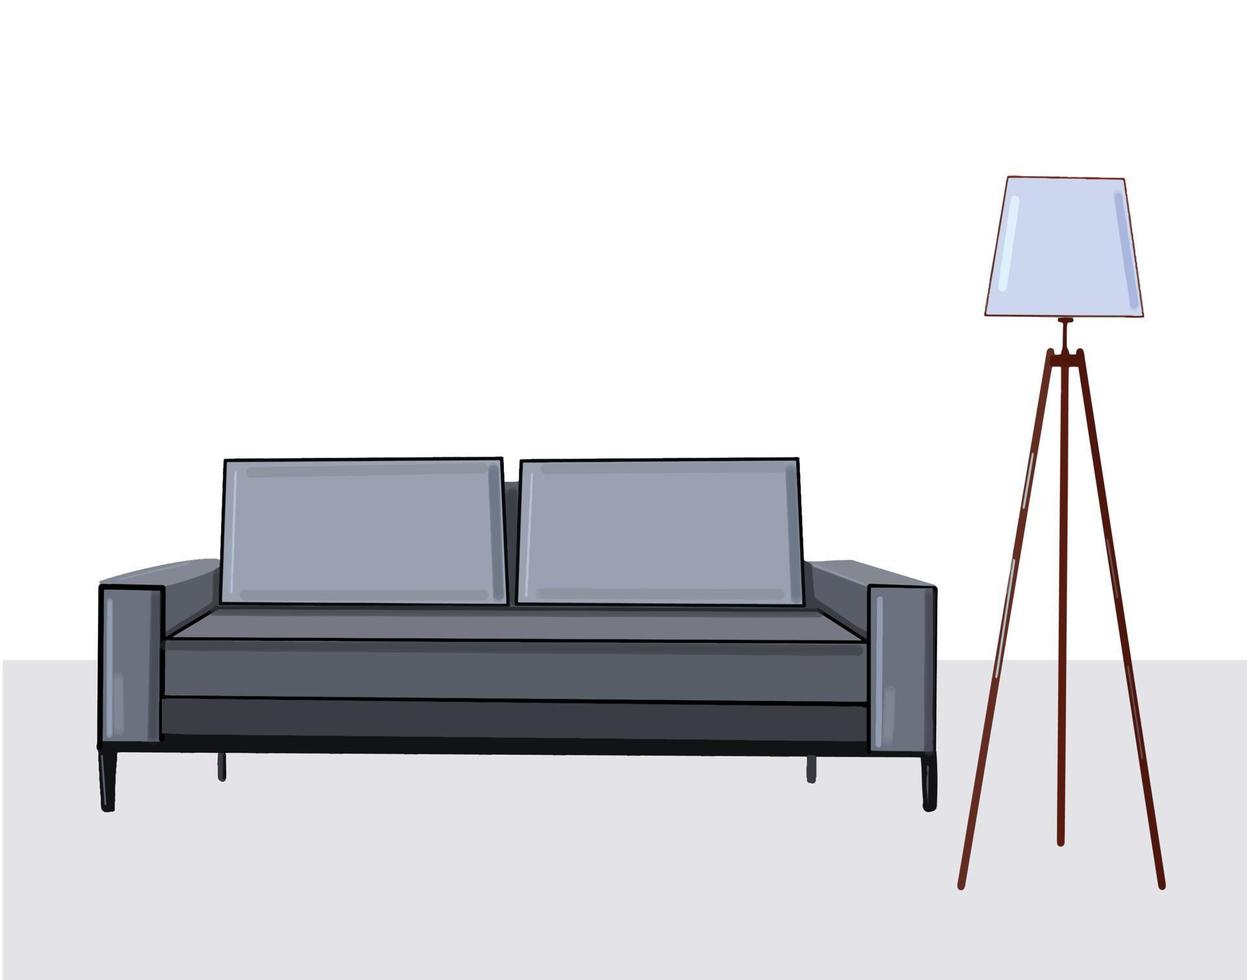 camera con divano grigio e lampada da terra, illustrazione vettoriale di interior design moderno